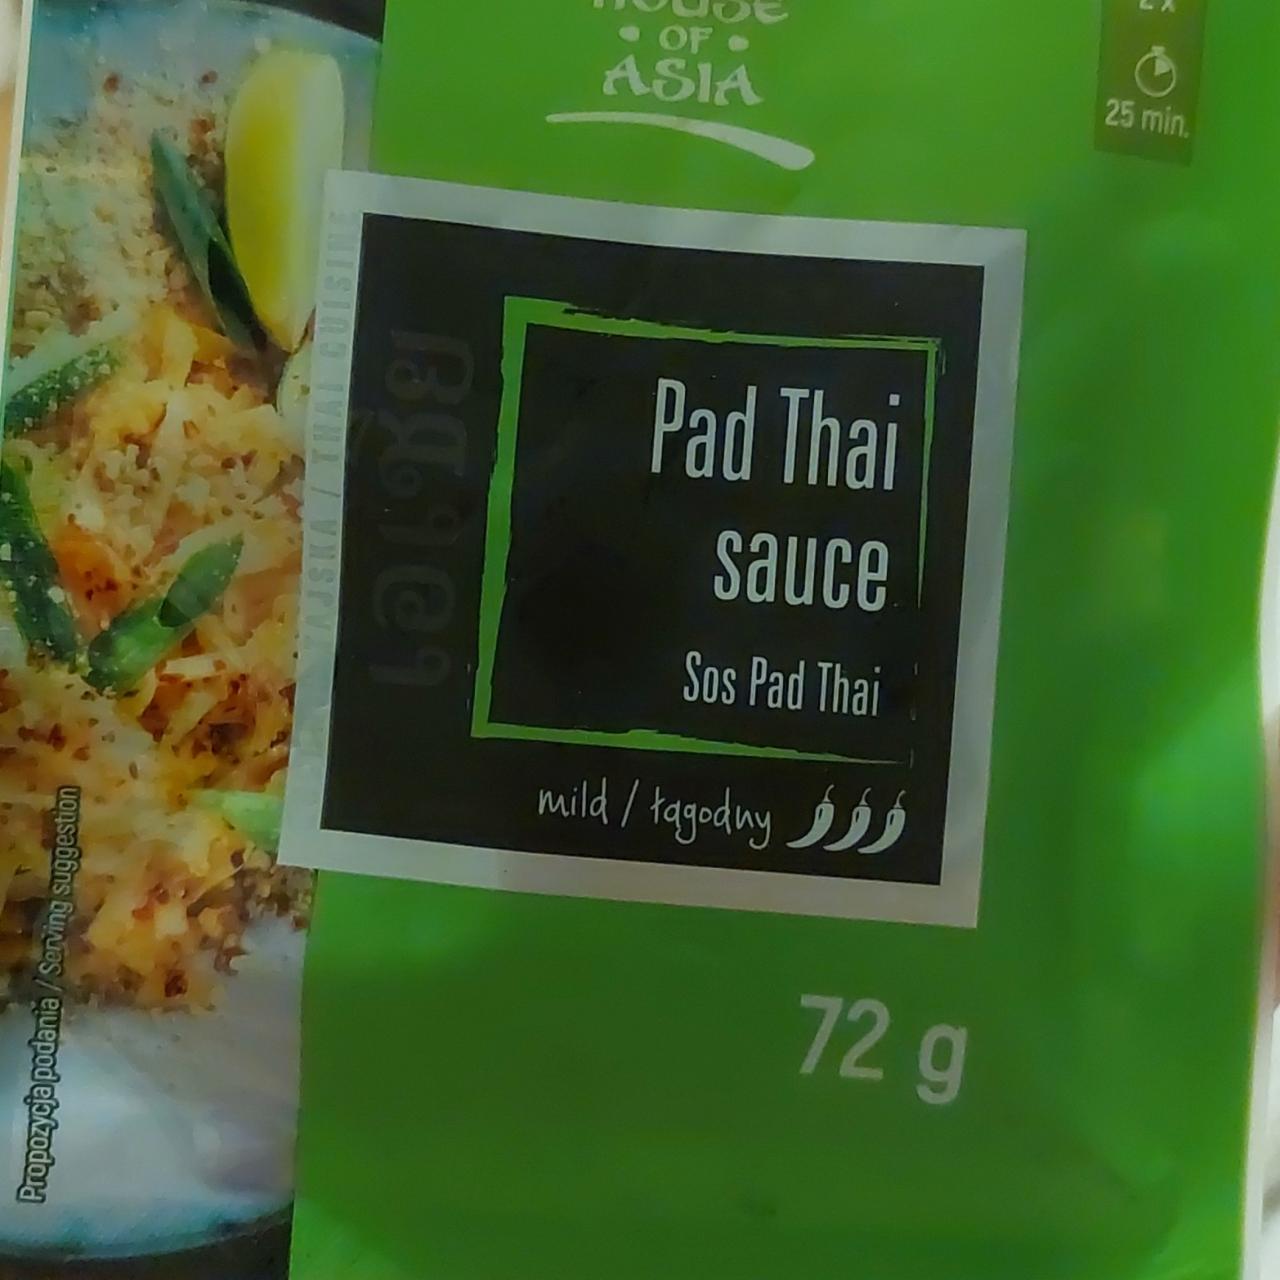 Fotografie - Pad Thai sauce mild House of Asia